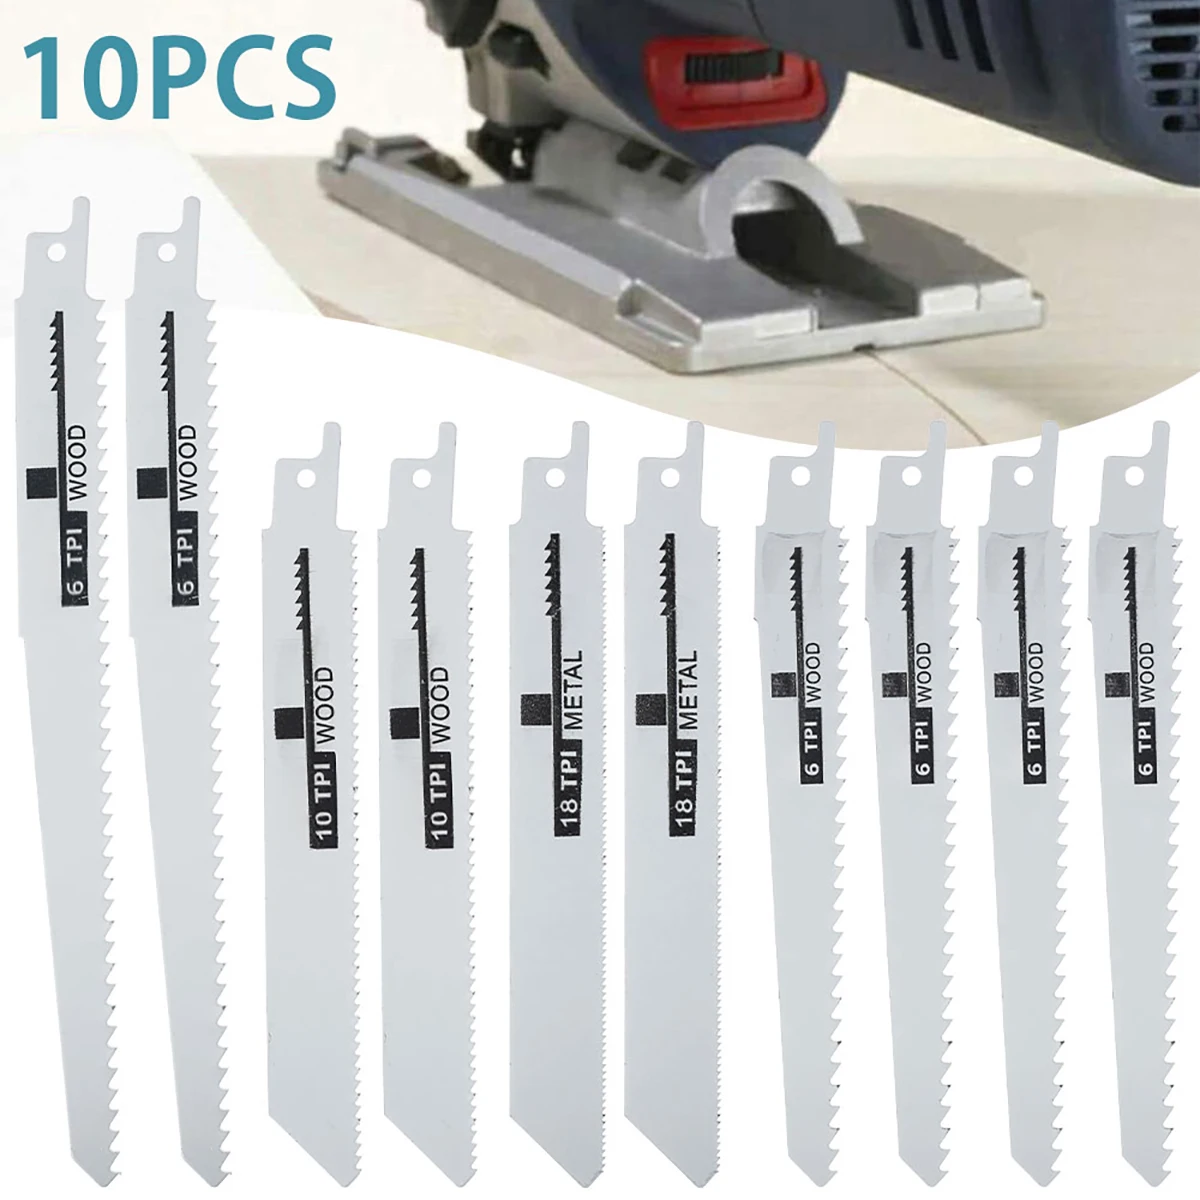 

10Pcs Reciprocating Saw Blades Saber Saw Handsaw Multi Saw Blade For Wood Metal Plastic Cutting For Bosch/Makita/Dewalt DIY Tool